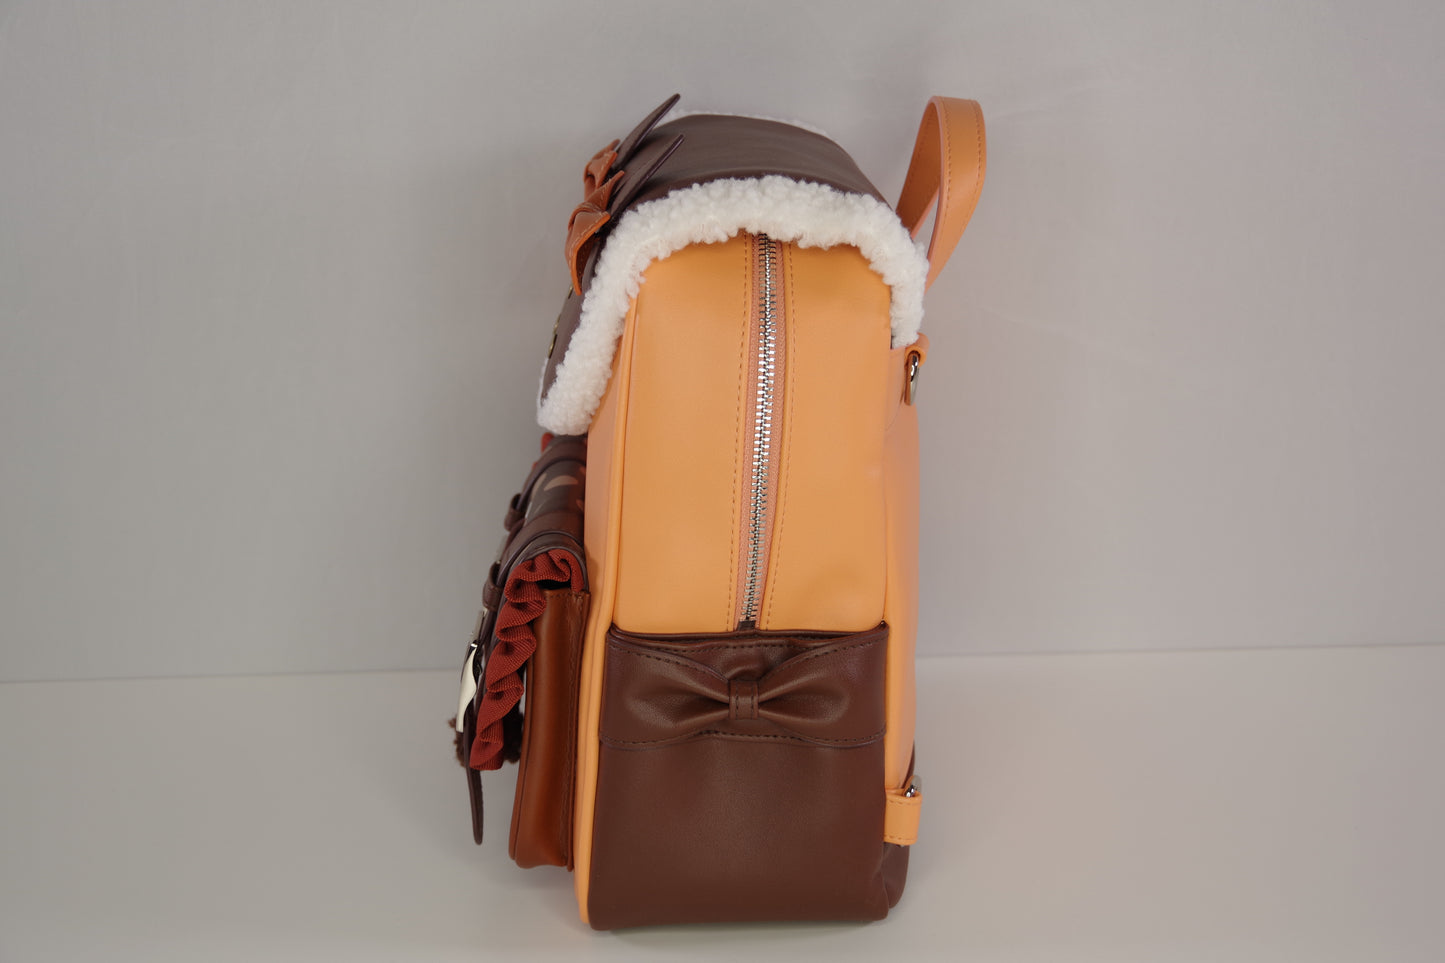 Nagisa Inspired Backpack